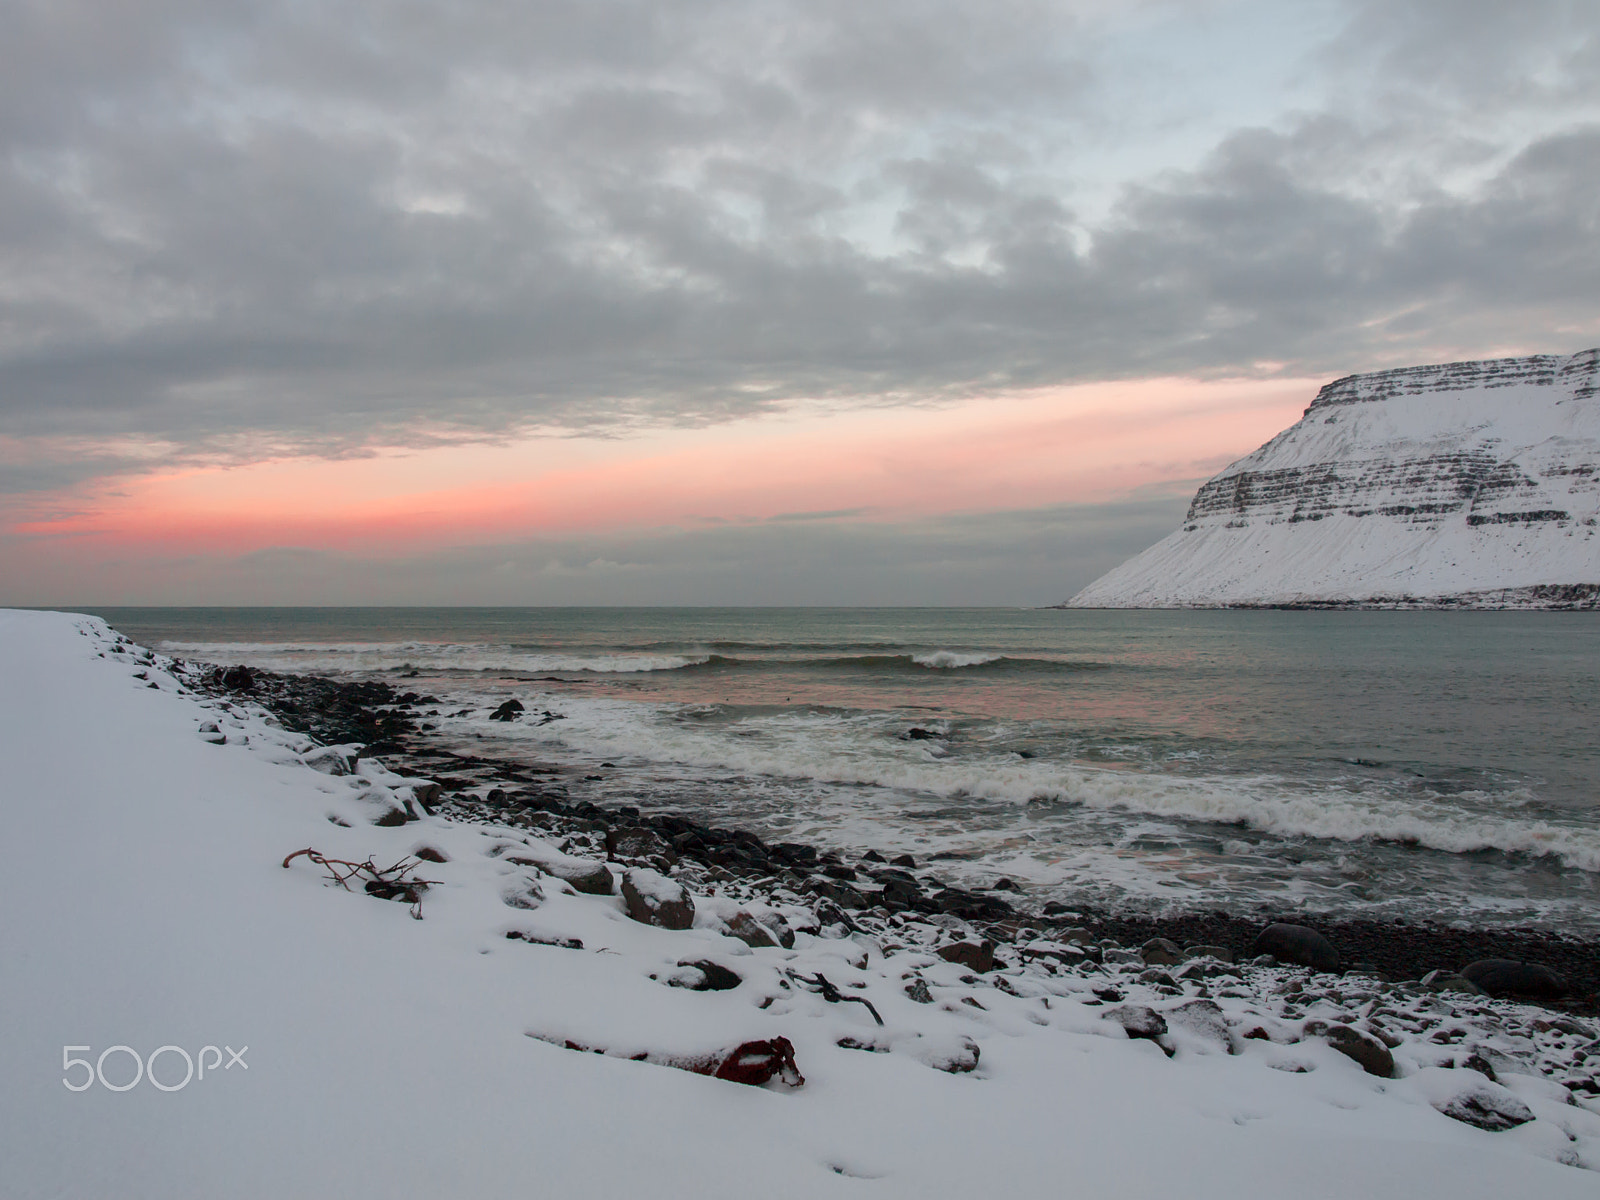 Olympus E-420 (EVOLT E-420) + OLYMPUS 14-42mm Lens sample photo. Icelandic landscape - sunset photography